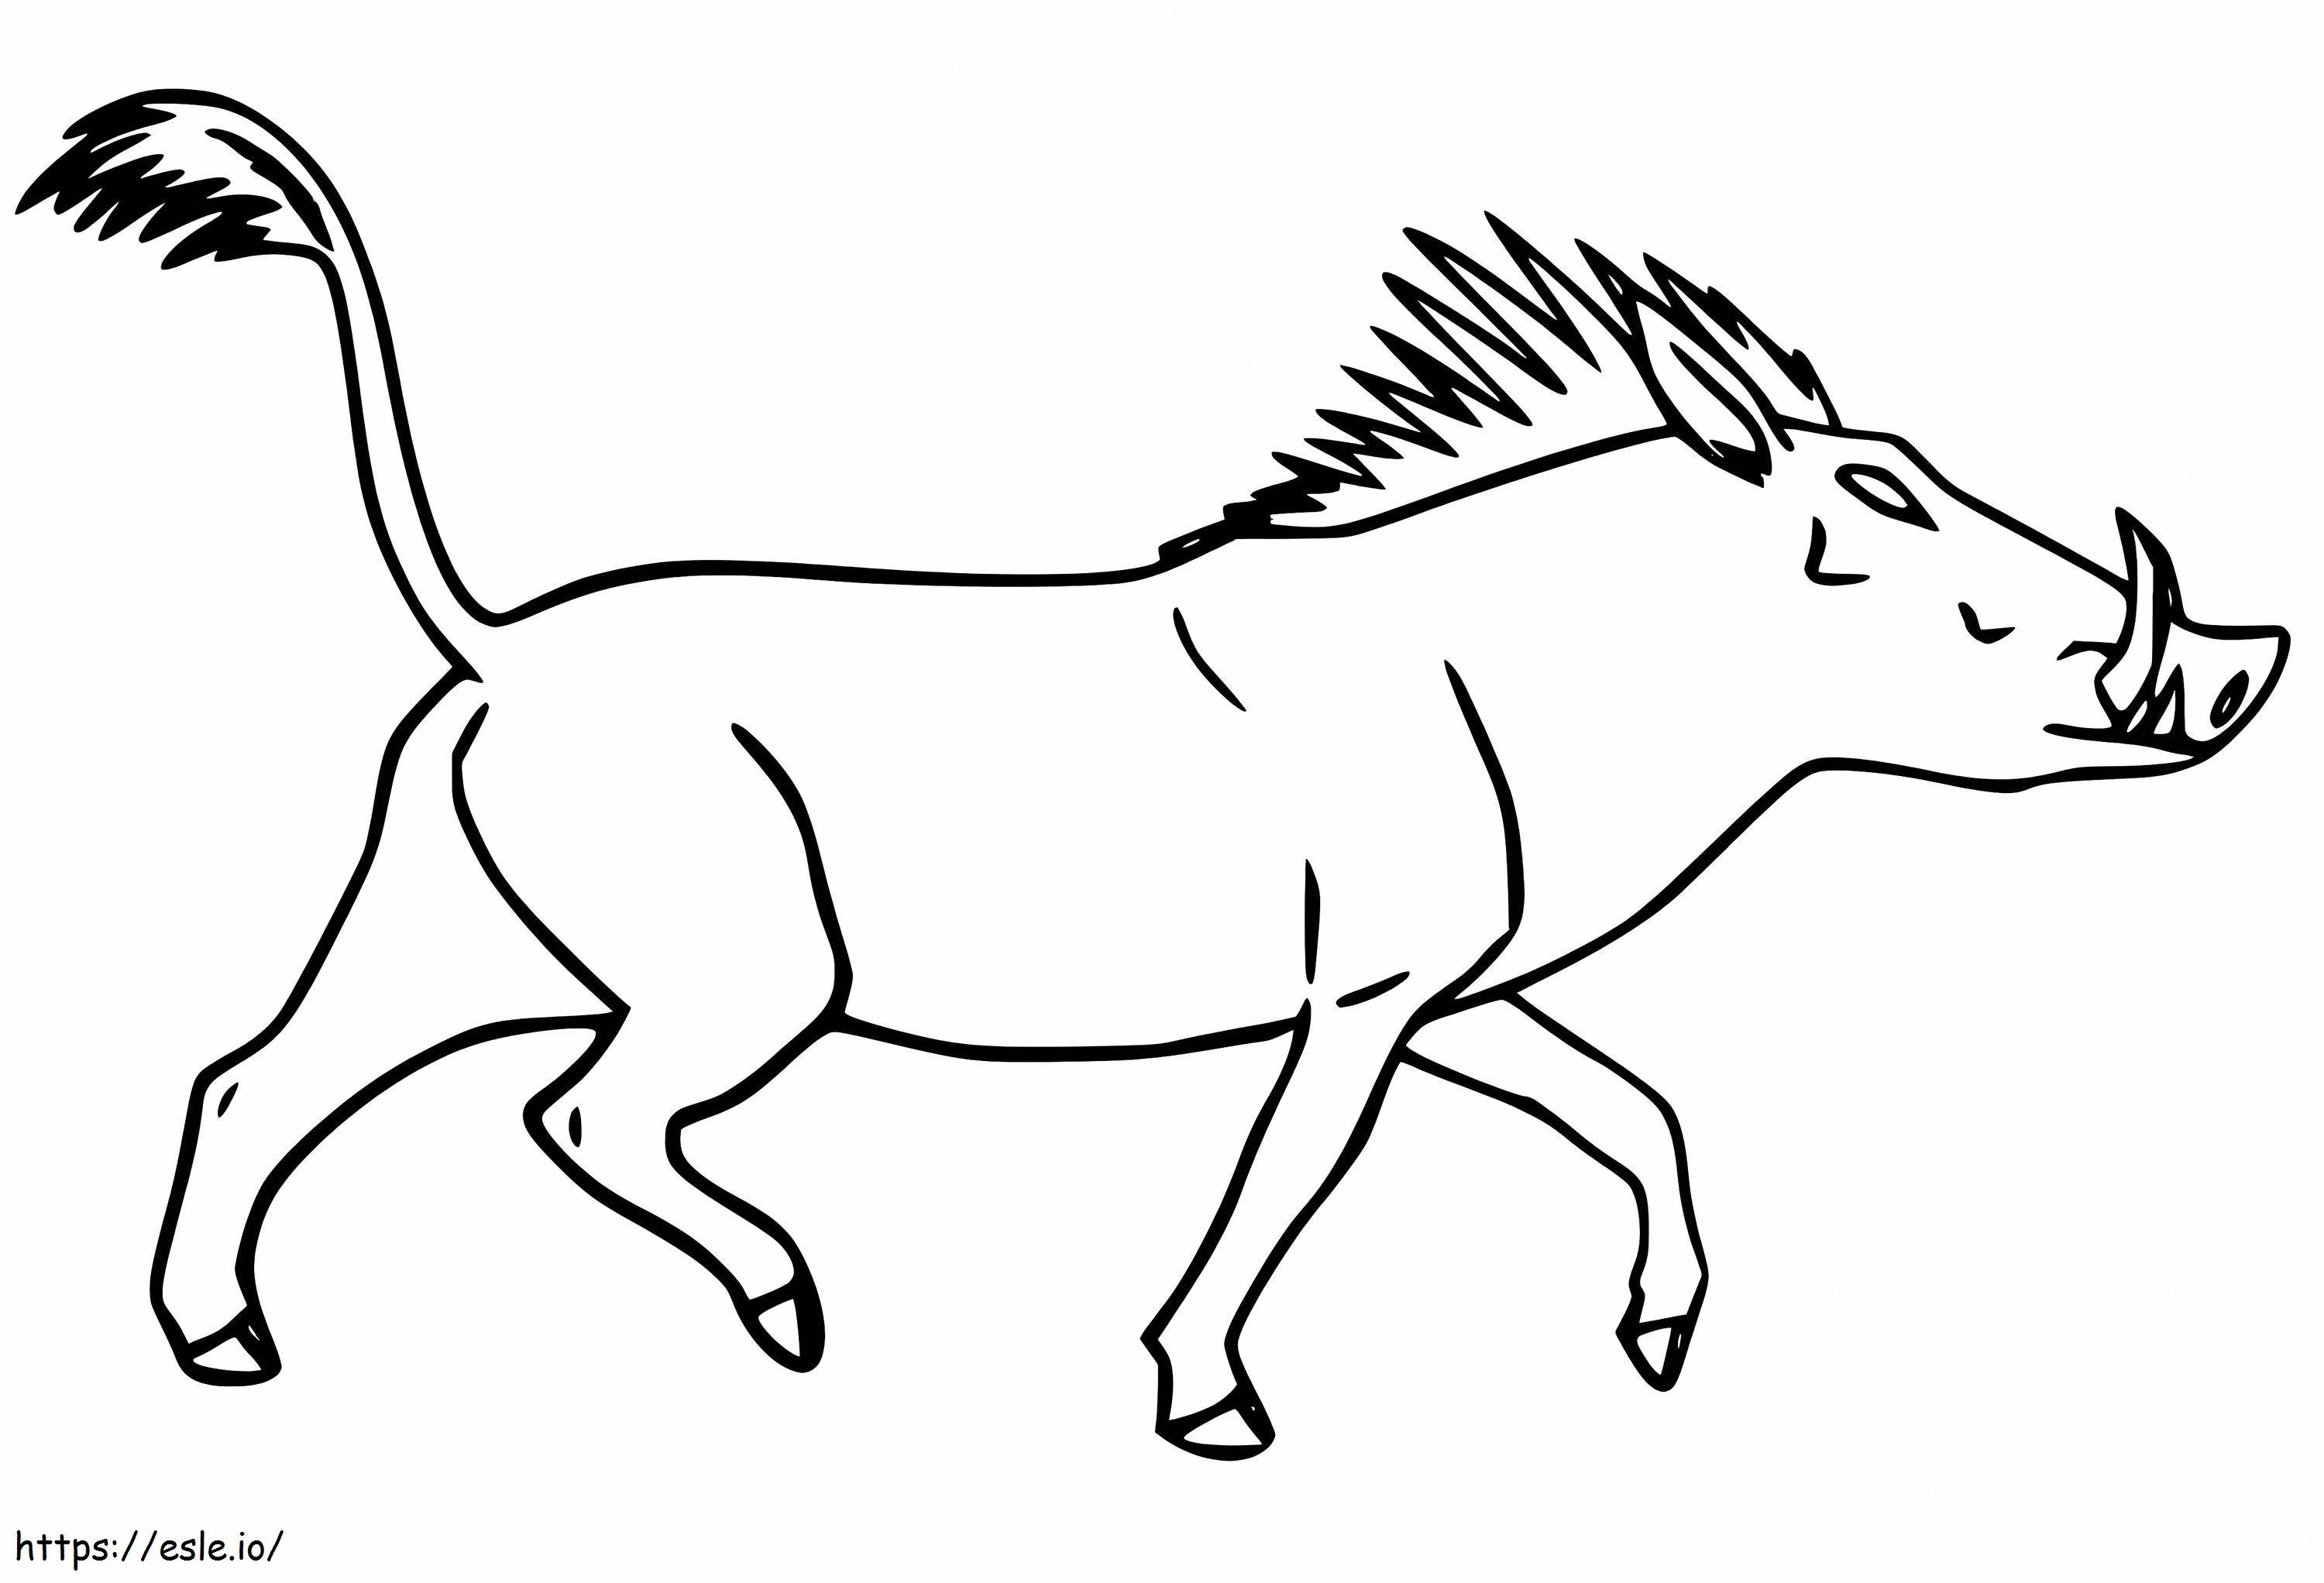 Warthog Walking coloring page